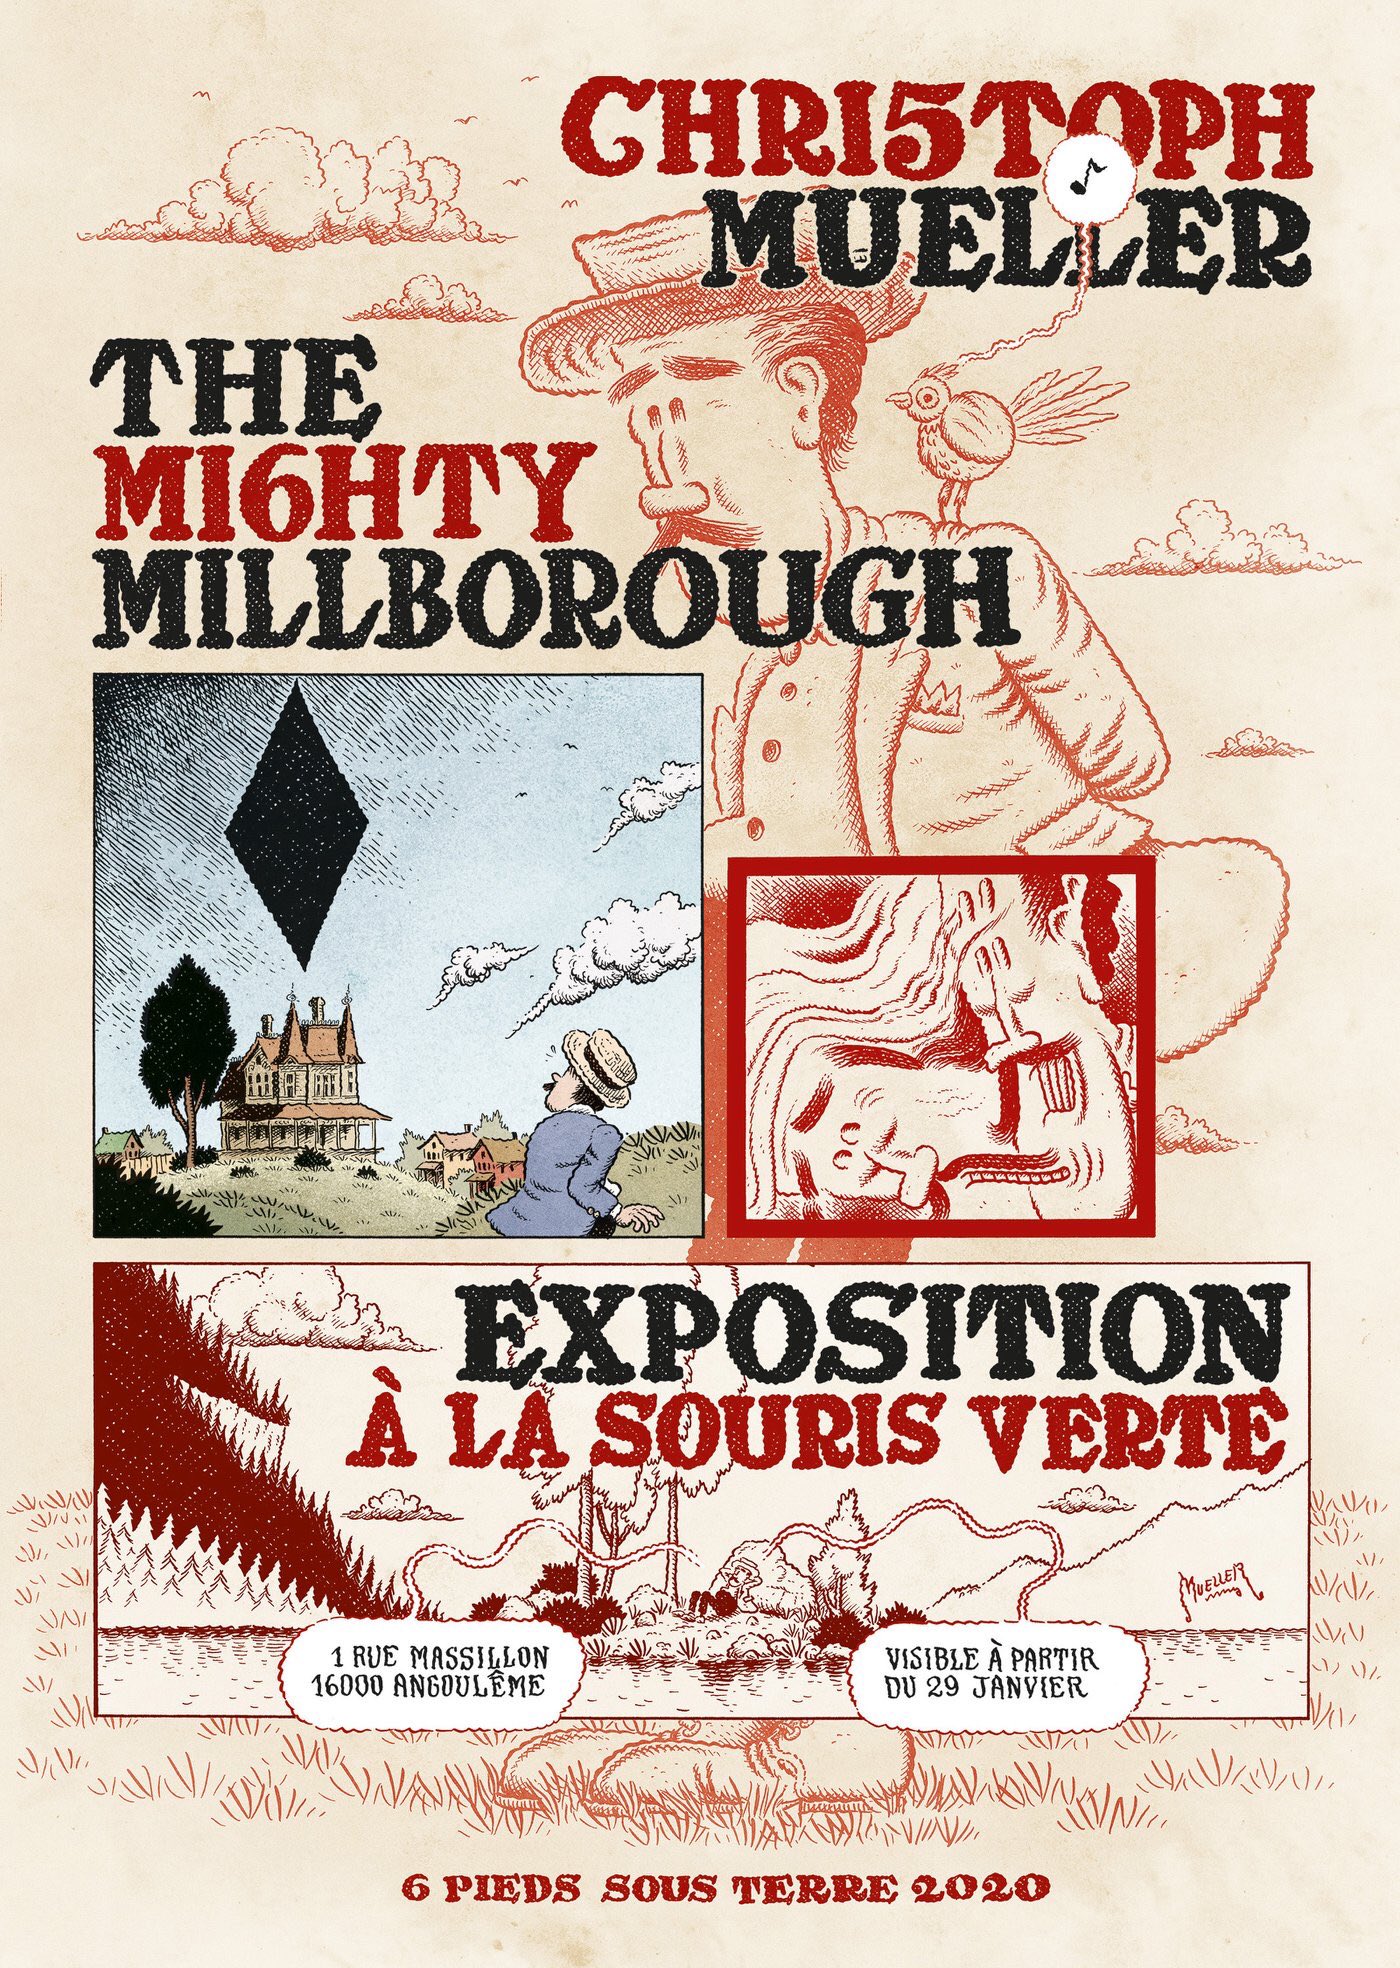 The Mighty Millborough Expo